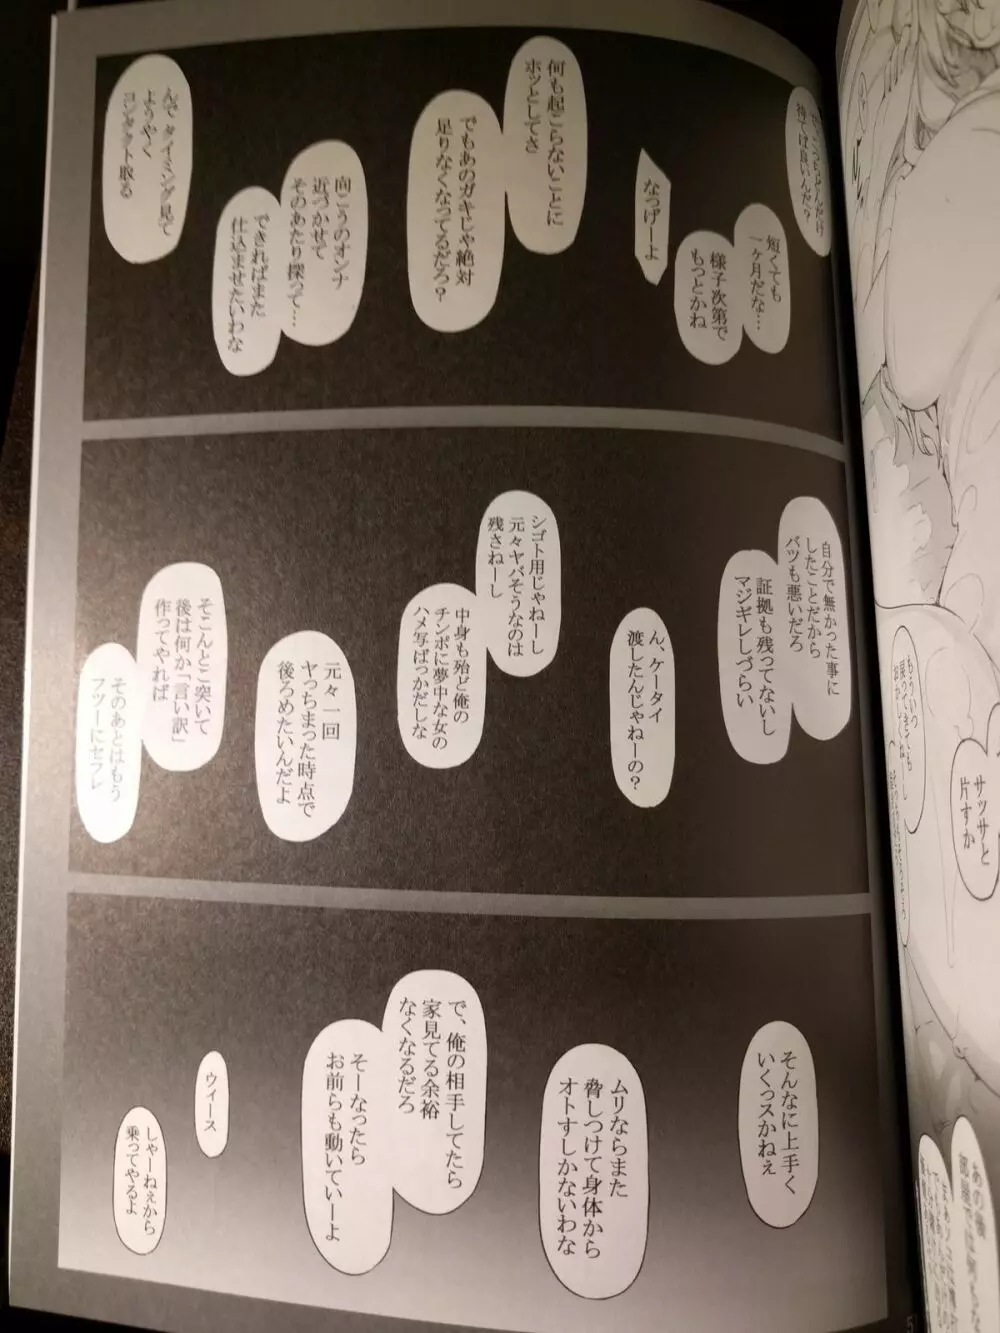 橘さん家ノ男性事情 小説版挿絵+オマケの本 page 27 onward 24ページ